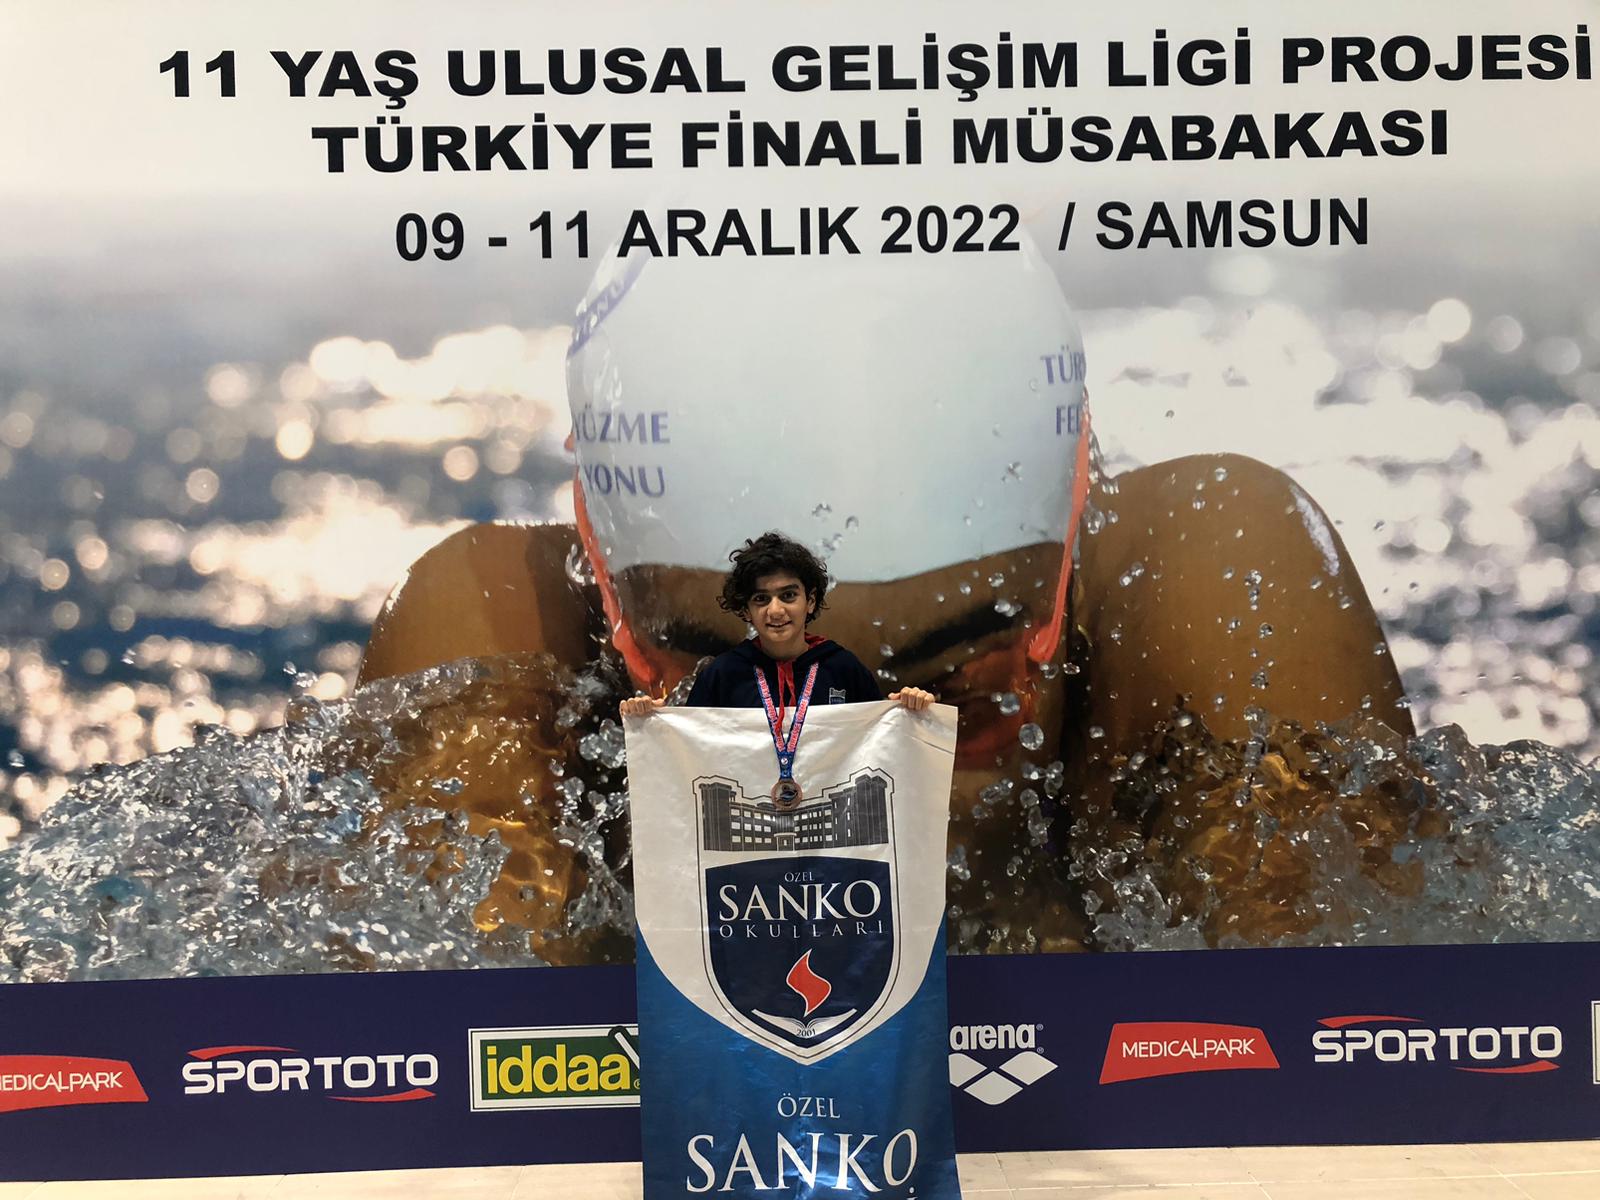 SANKO Okulları öğrencisi Tuna Karakuş, Türkiye Yüzme Federasyonu tarafından düzenlenen “11 Yaş Ulusal Gelişim Ligi Projesi Türkiye Finali”nde bronz madal..